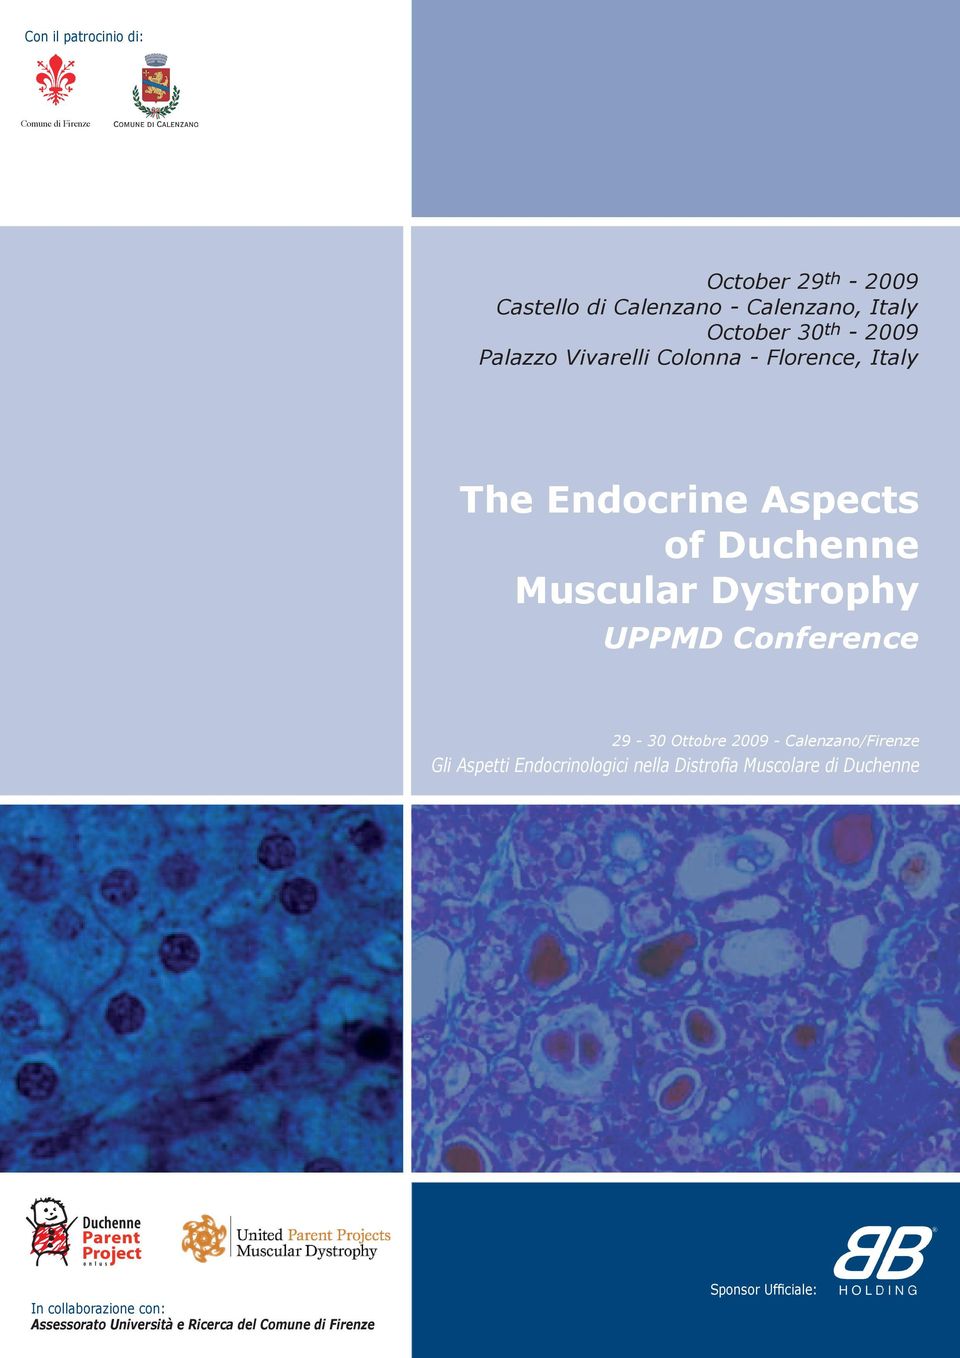 UPPMD Conference 29-30 Ottobre 2009 - Calenzano/Firenze Gli Aspetti Endocrinologici nella Distrofia